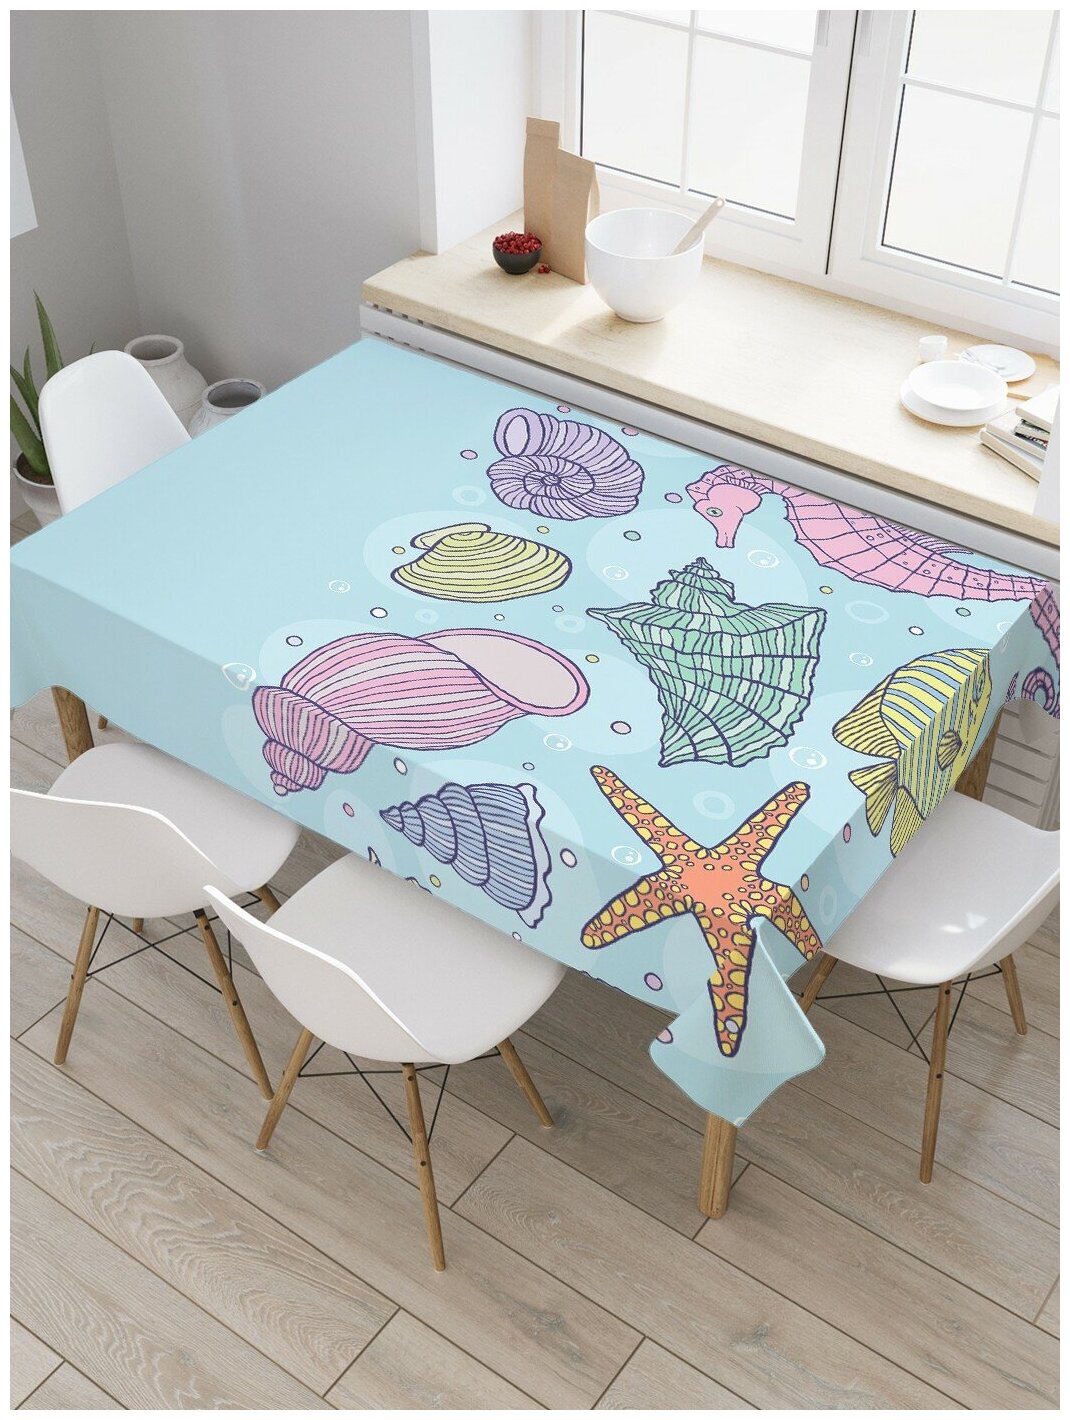 Прямоугольная водоотталкивающая тканевая скатерть на стол JoyArty с рисунком "Разноцветное морское дно" 145 на 180 смголубой, розовый, желтый